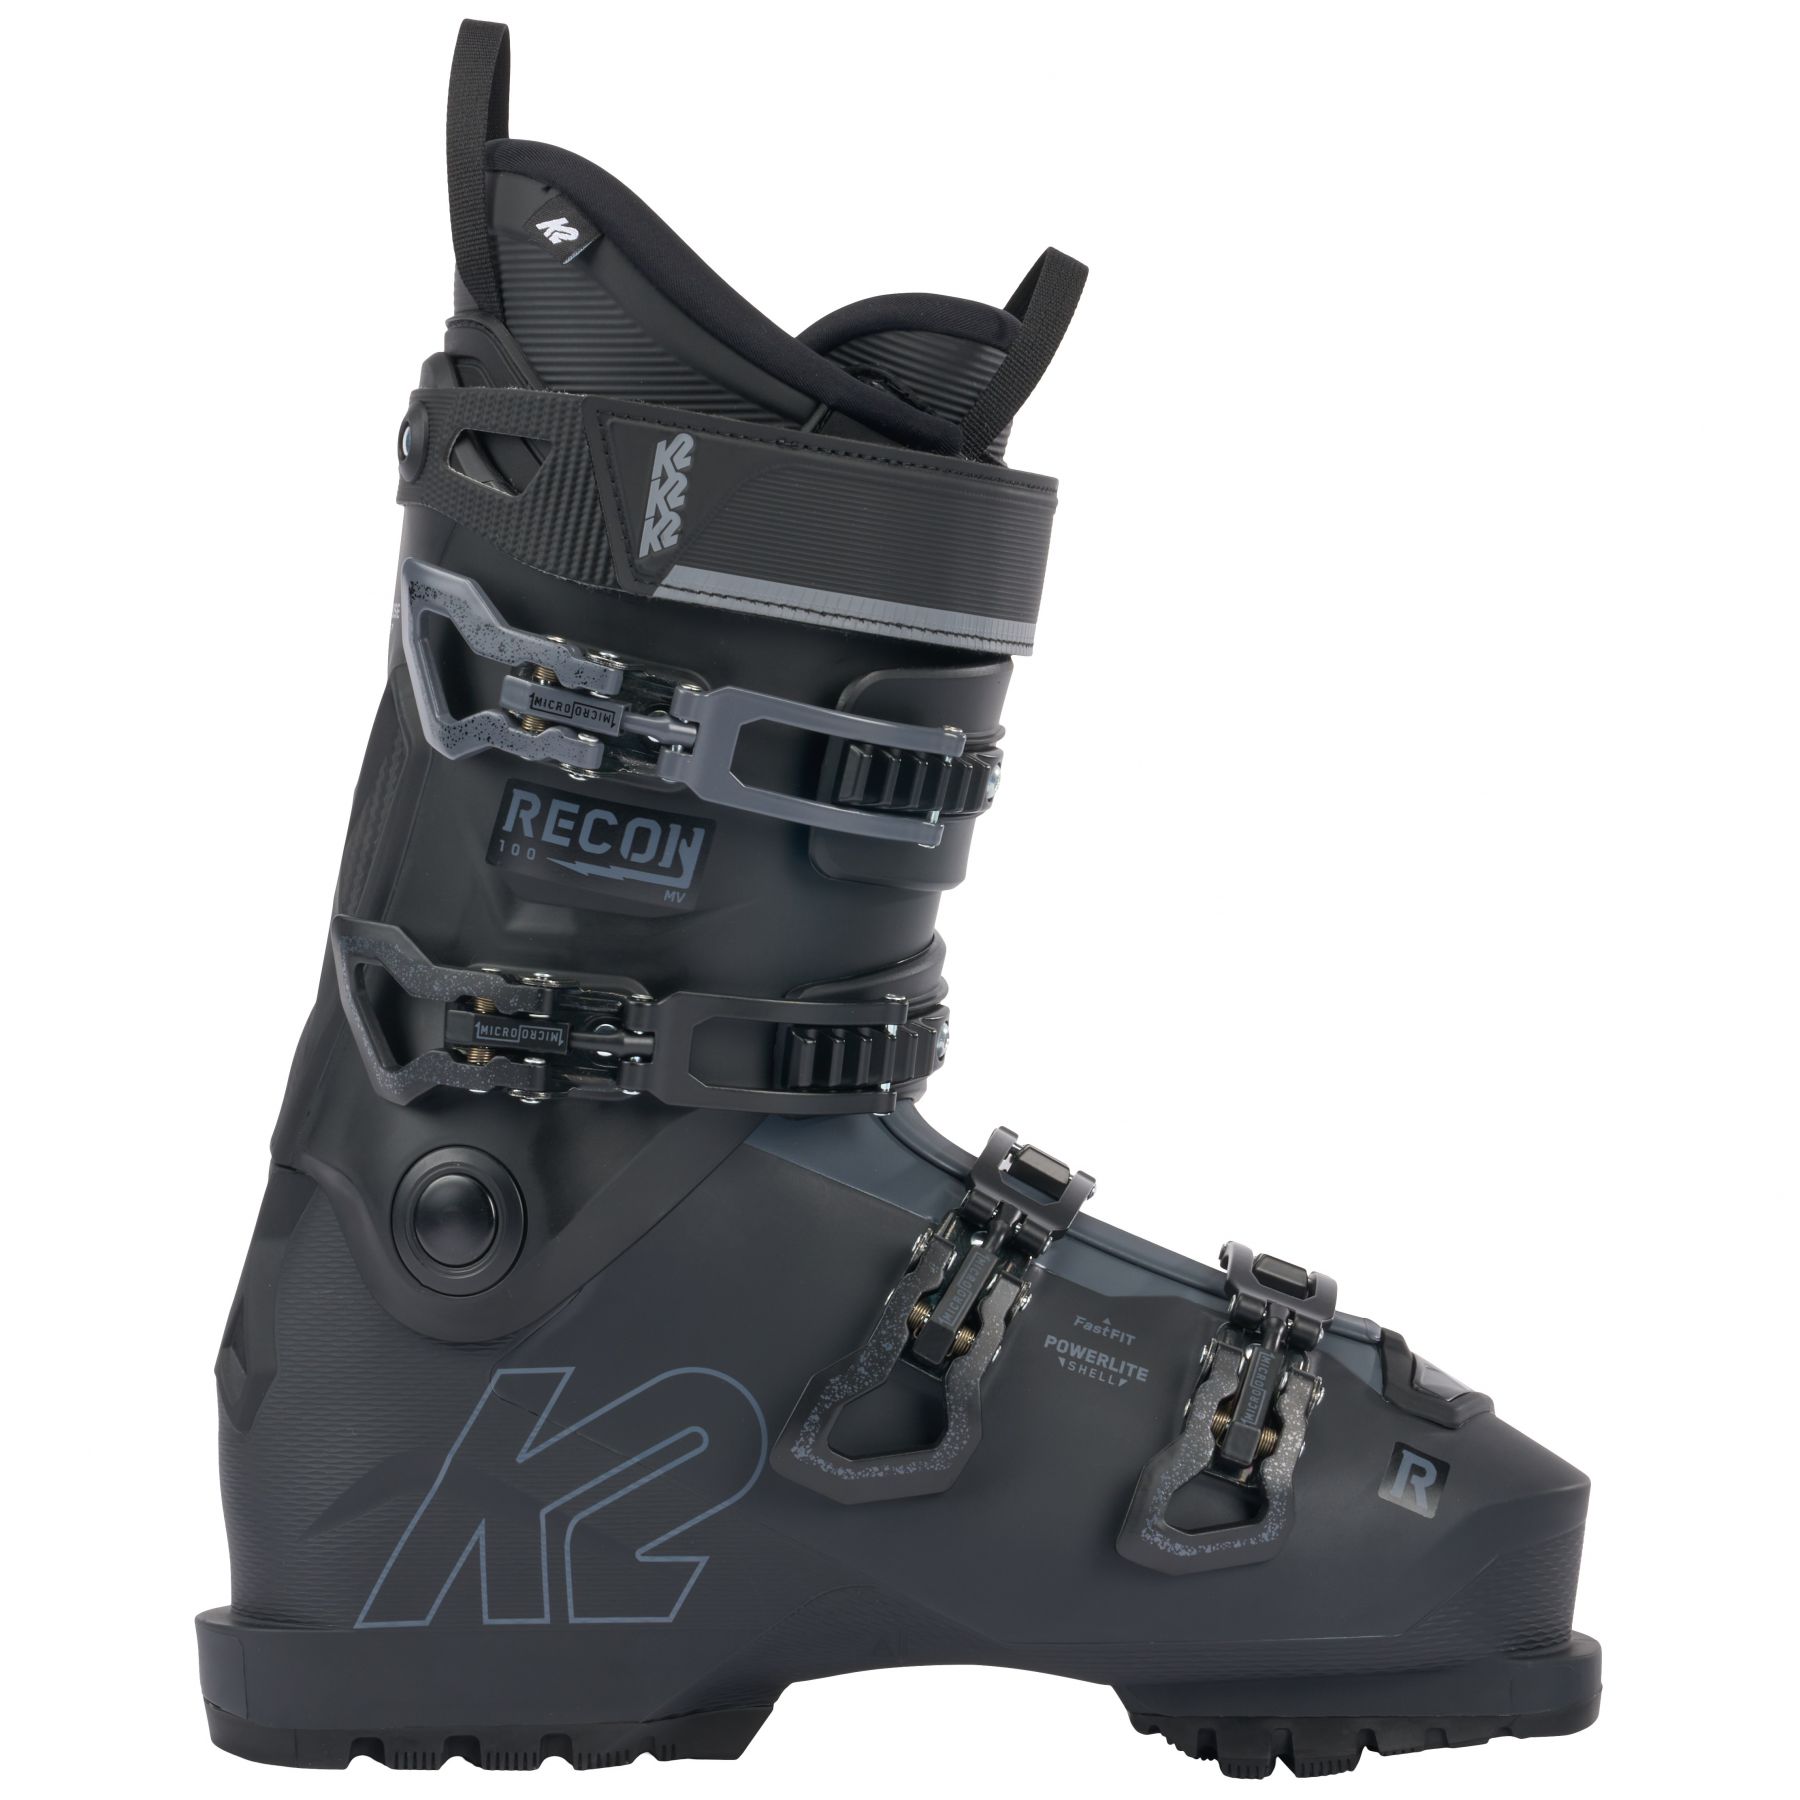 Brug K2 Recon 100 MV, skistøvler, herre, sort til en forbedret oplevelse